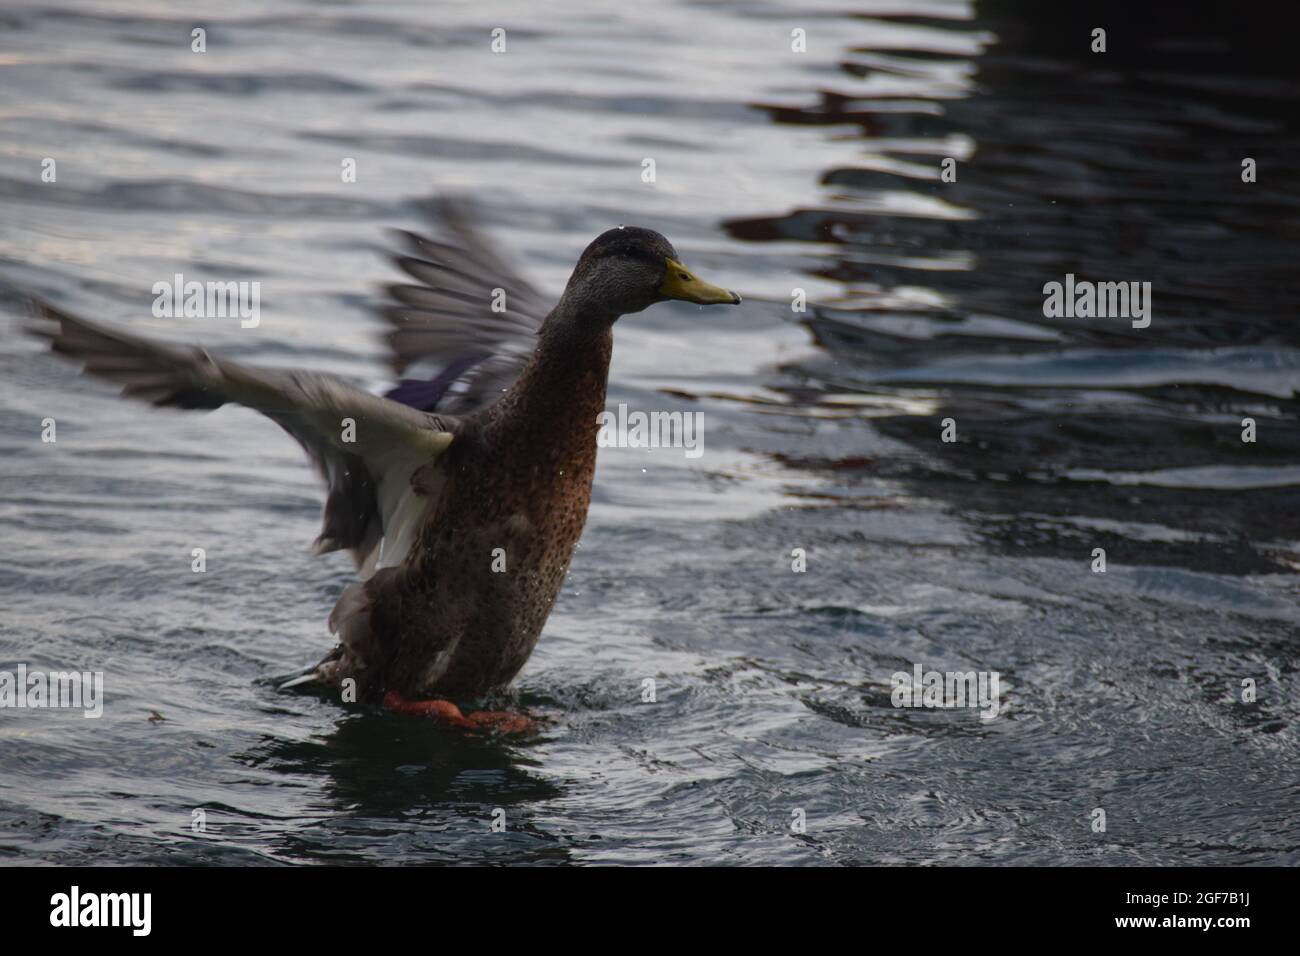 Eine Ente im flug nel lago di costanza di Überlingen am Bodensee Foto Stock